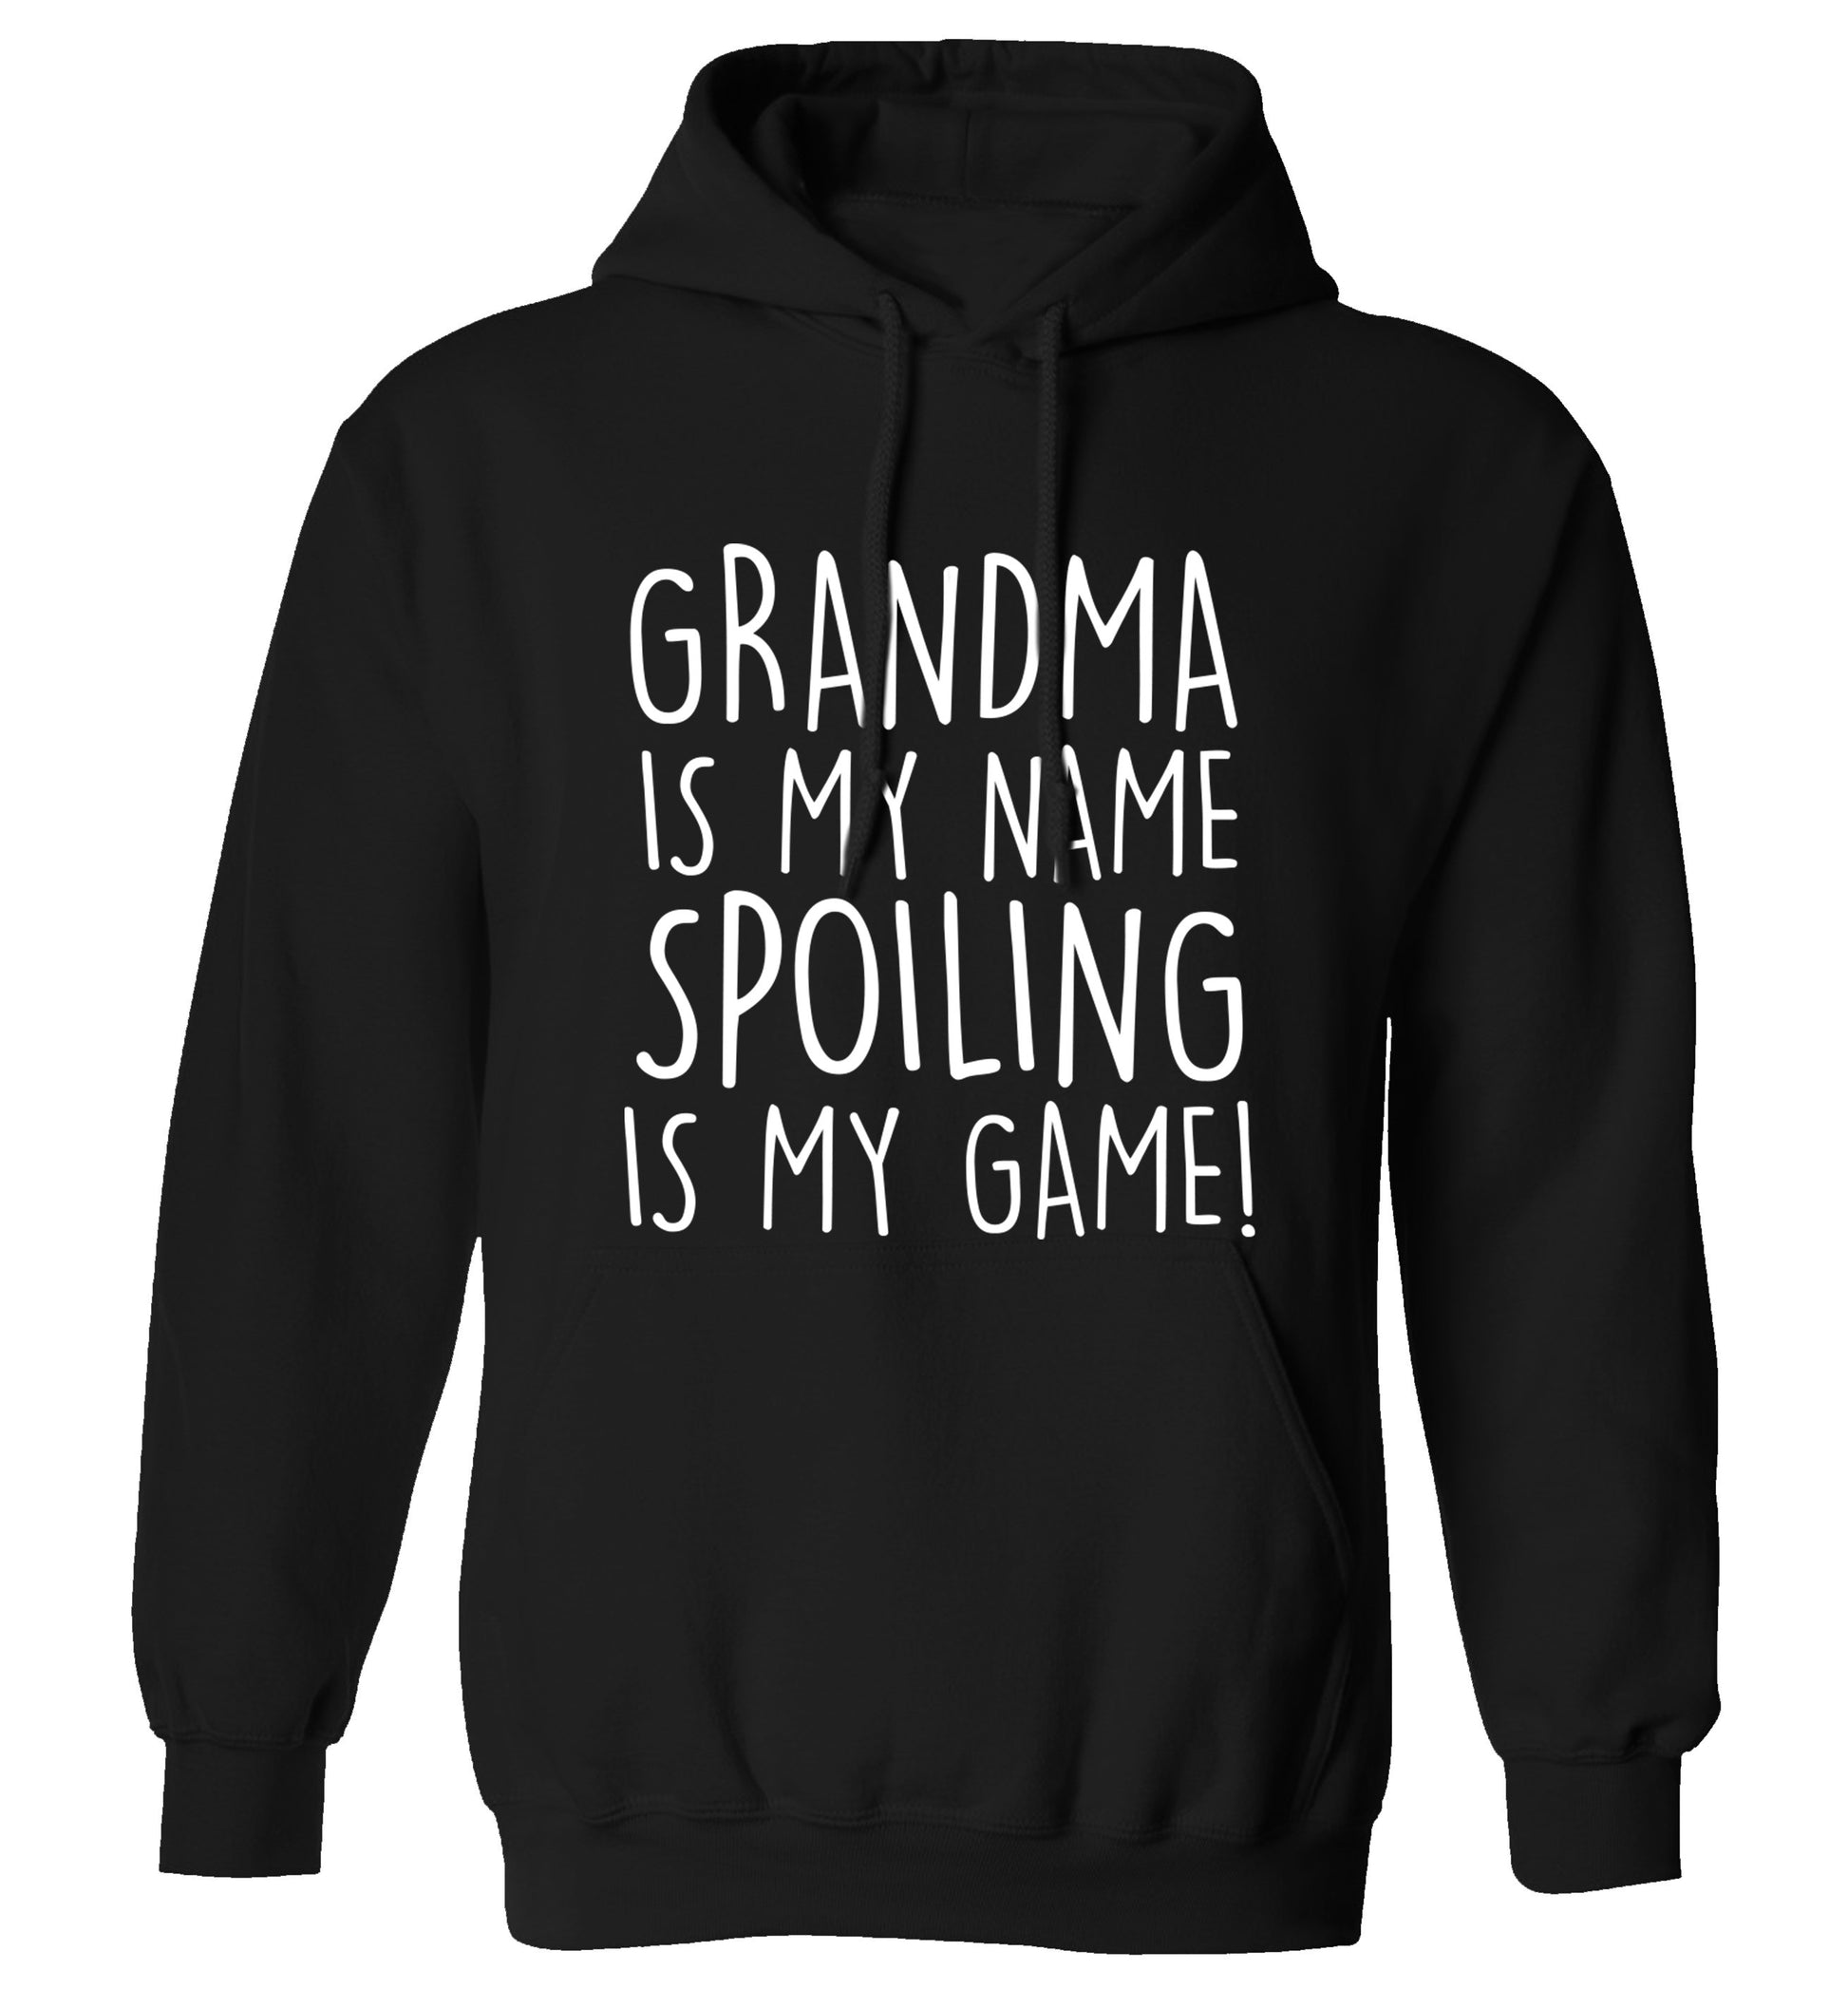 Grandma is my name, spoiling is my game adults unisex black hoodie 2XL